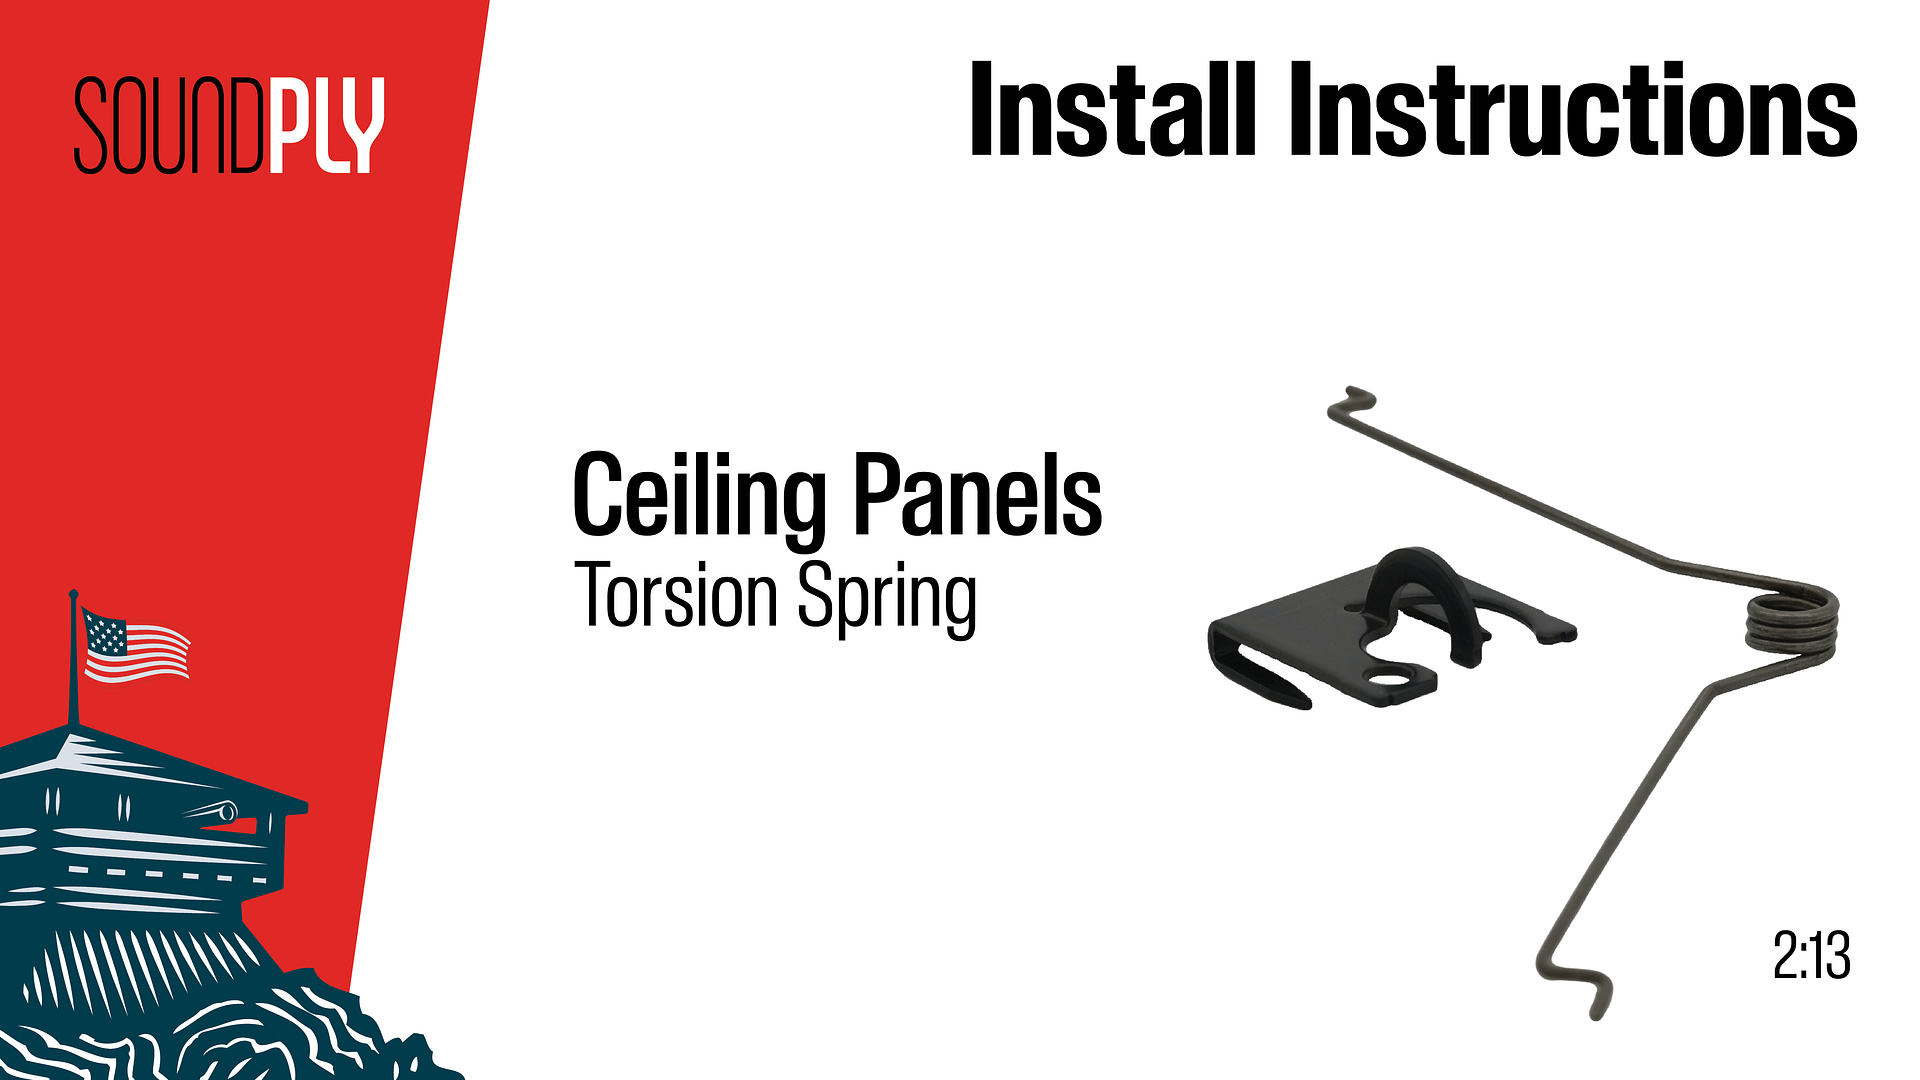 Ceiling Panels Torsion Spring